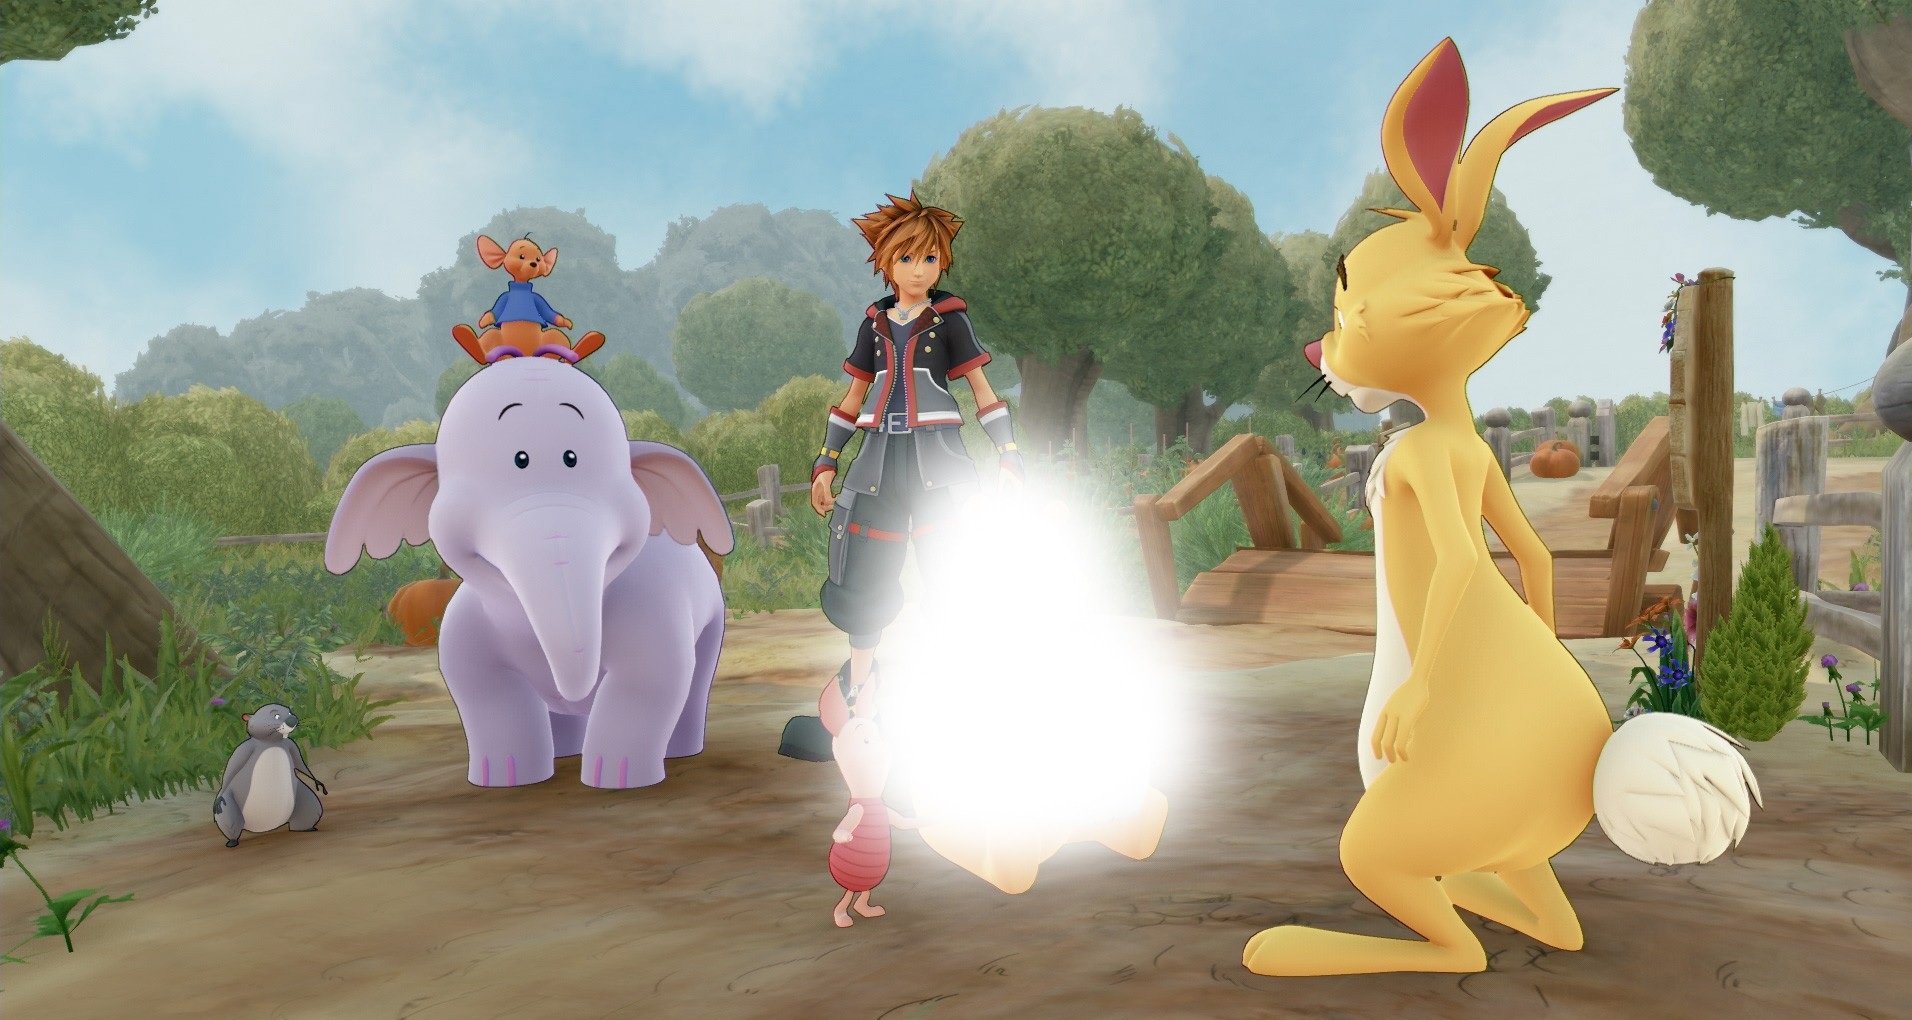 Kitajska cenzura Winnie the Pooh iz Kingdom Hearts 3 je nora in smešna